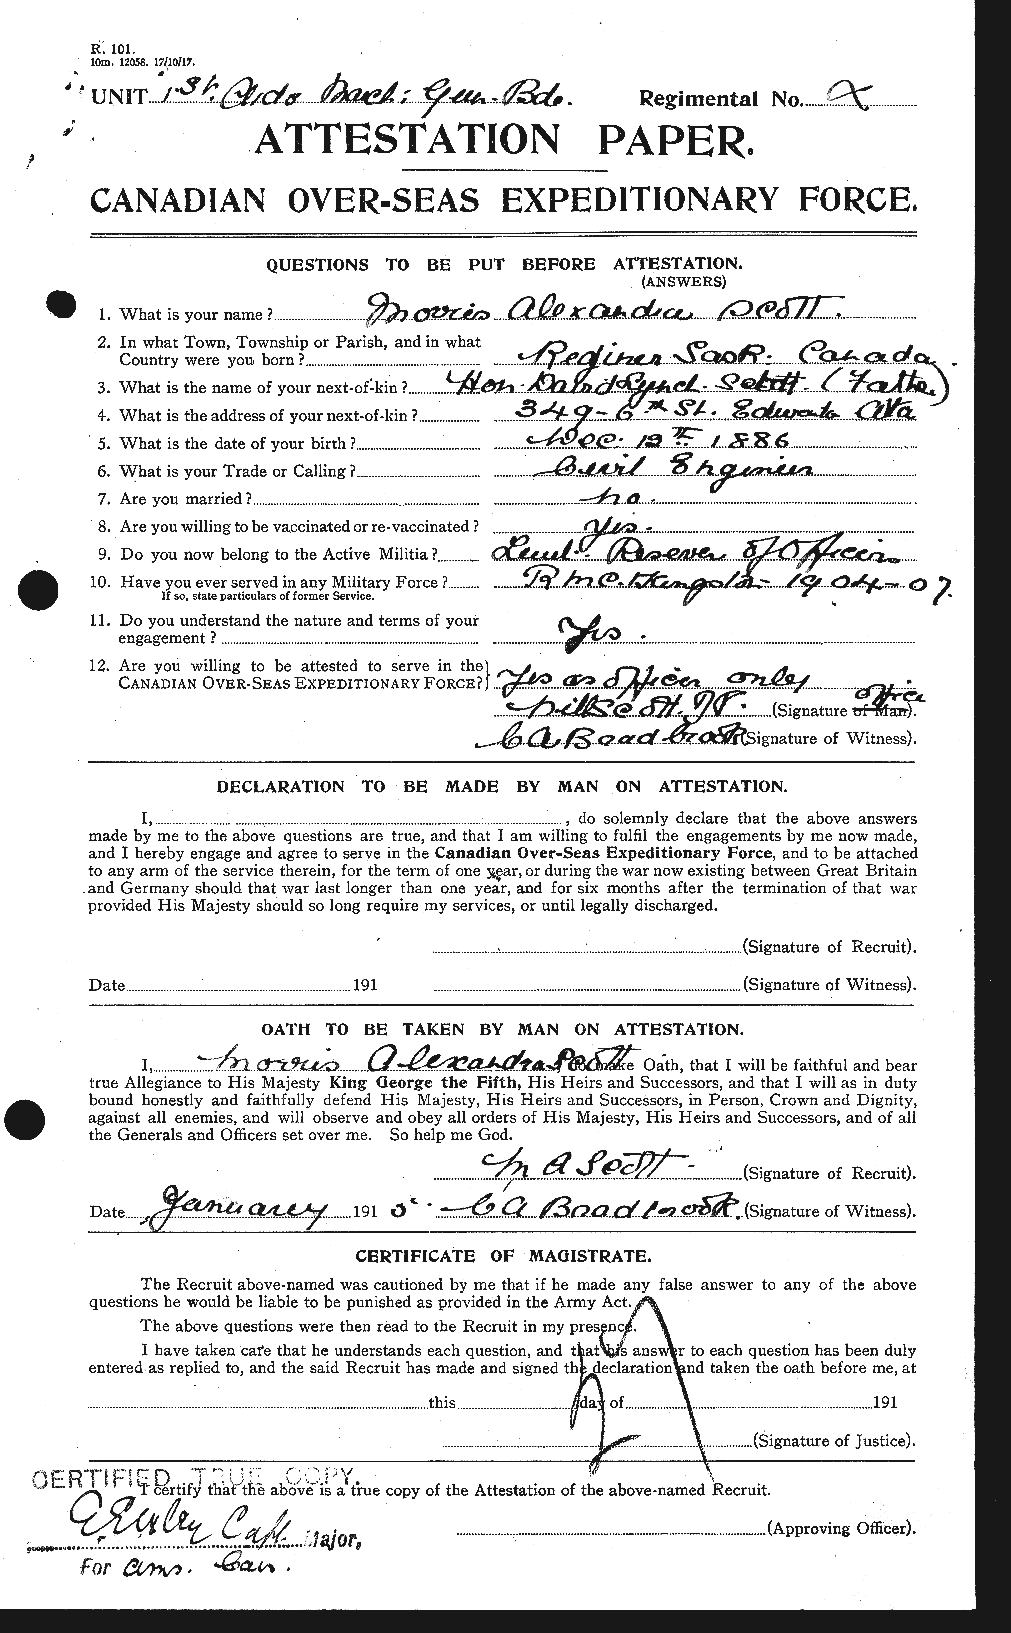 Dossiers du Personnel de la Première Guerre mondiale - CEC 083486a